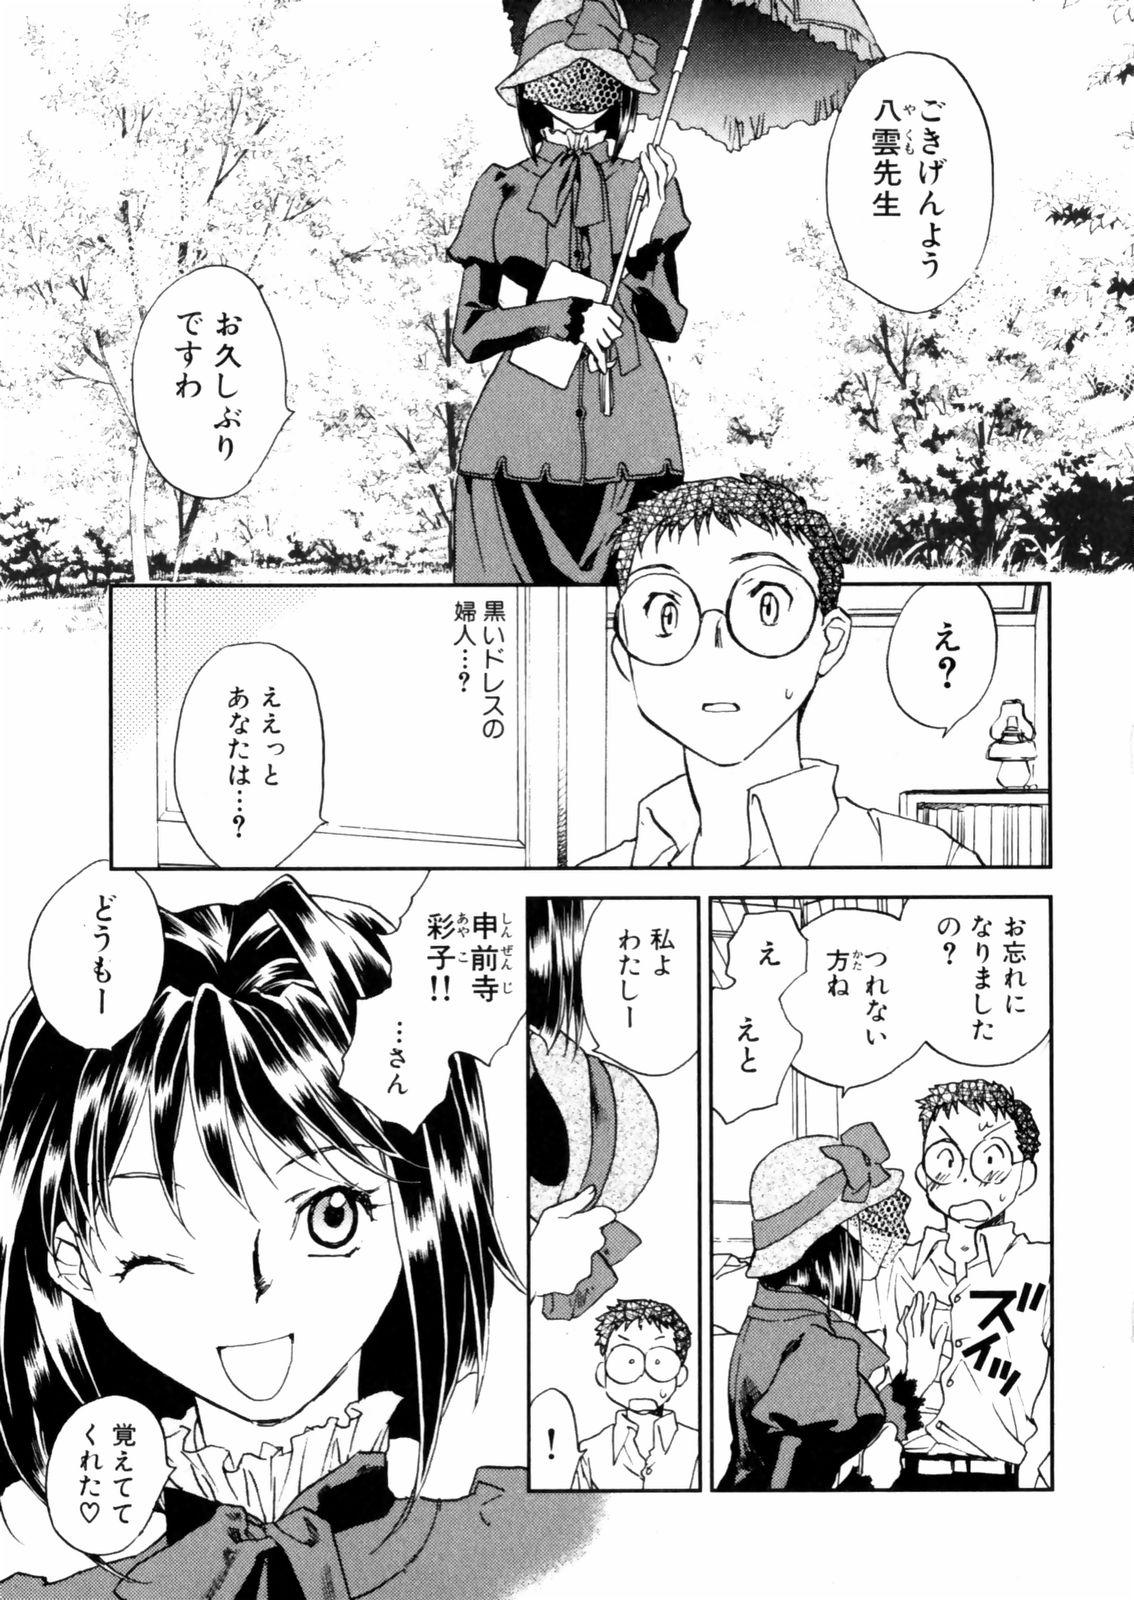 [Okano Ahiru] Hanasake ! Otome Juku (Otome Private Tutoring School) Vol.2 44